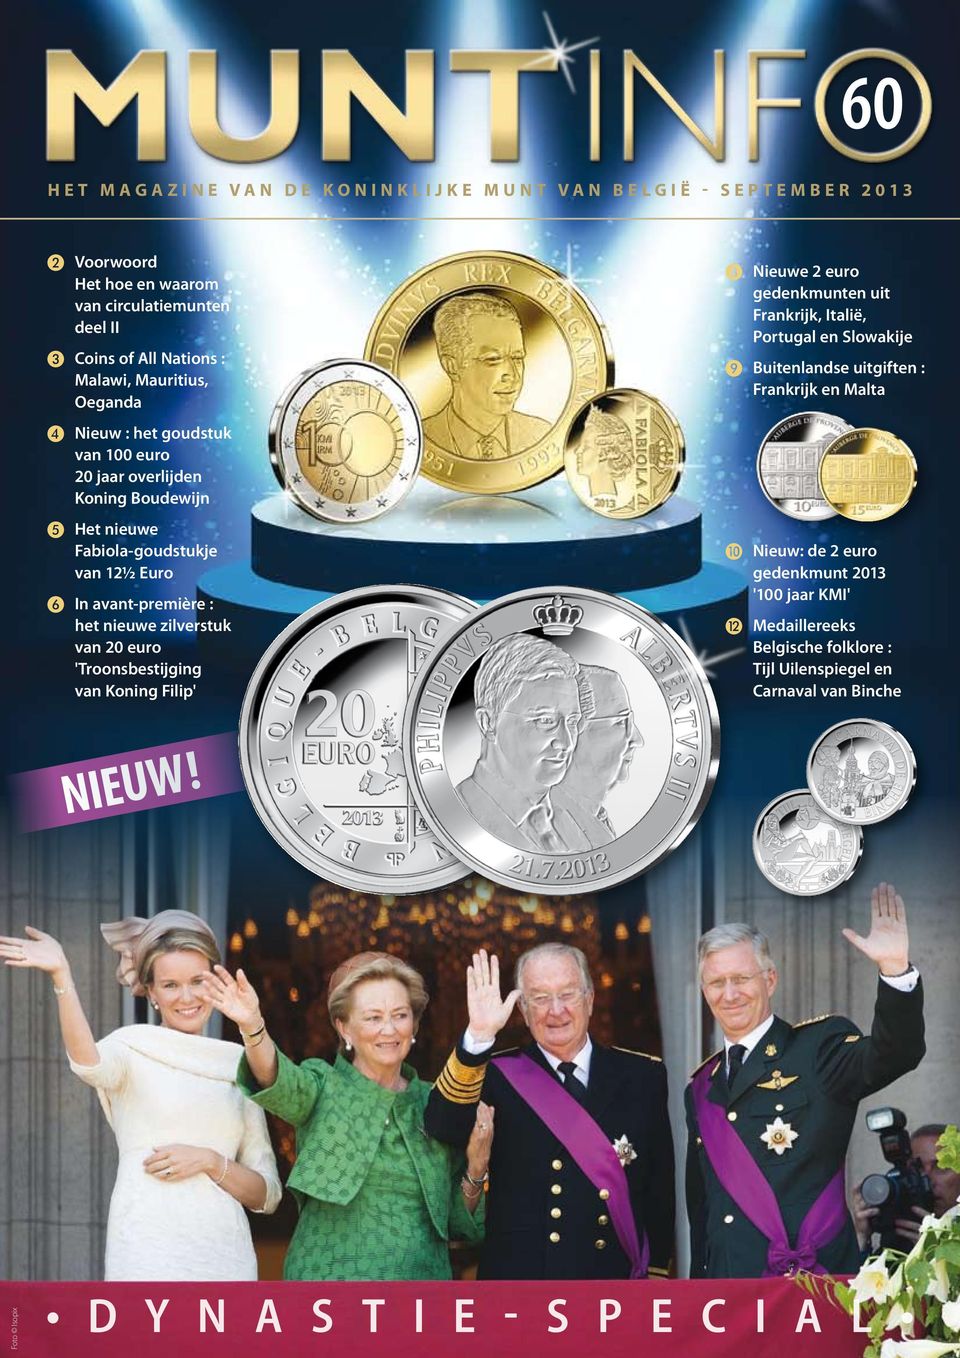 zilverstuk van 20 euro 'Troonsbestijging van Koning Filip' ❽ Nieuwe 2 euro gedenkmunten uit Frankrijk, Italië, Portugal en Slowakije ❾ Buitenlandse uitgiften :